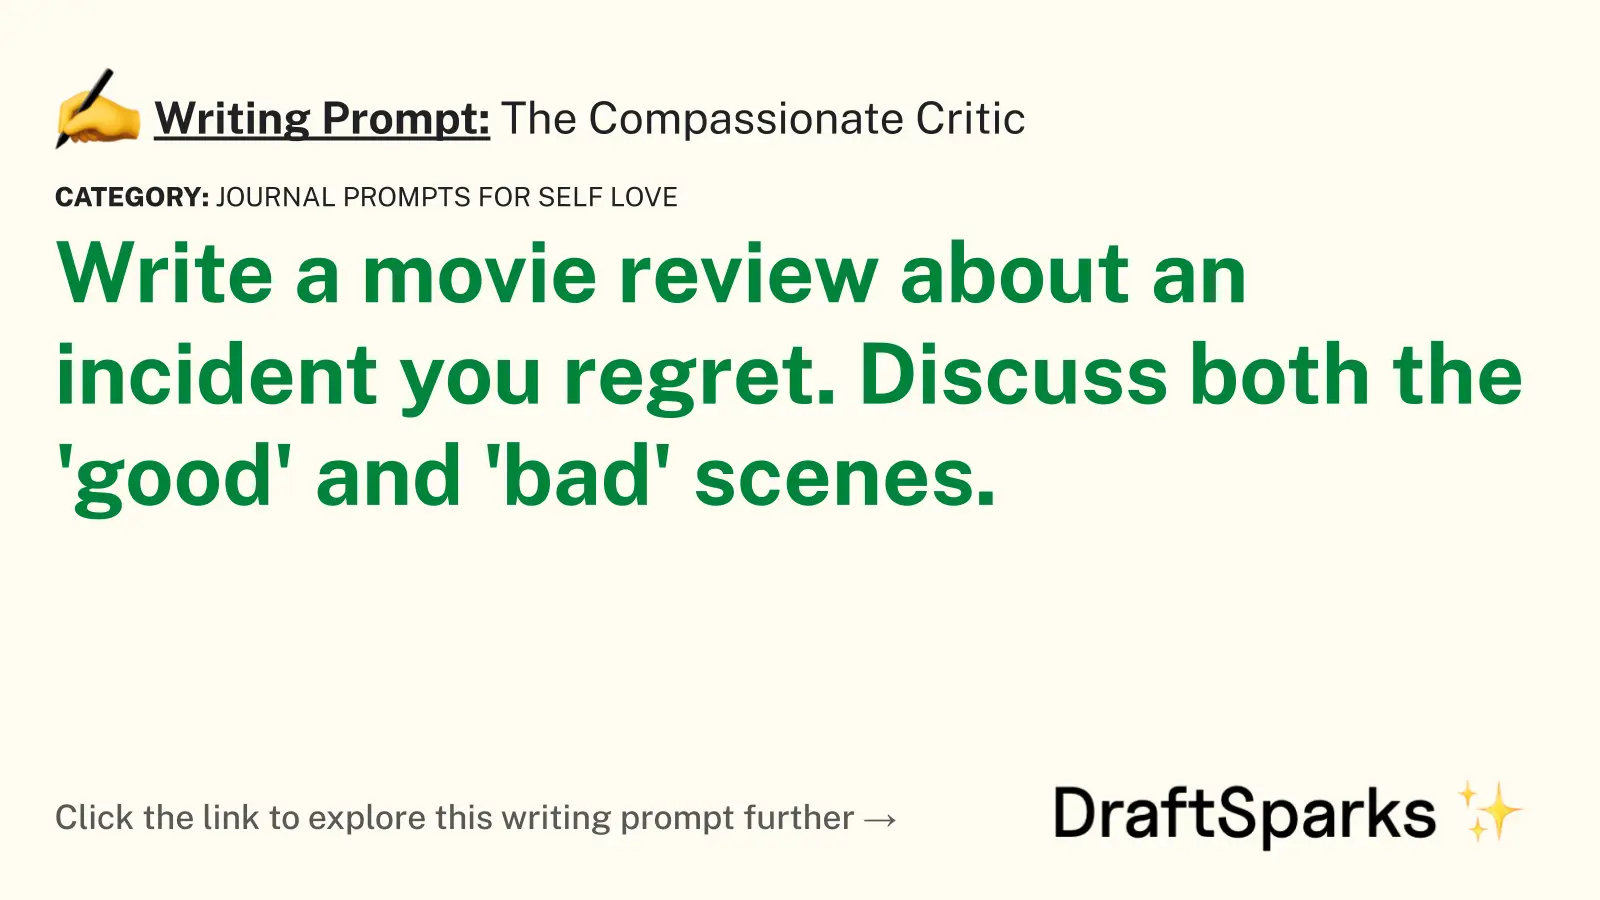 The Compassionate Critic